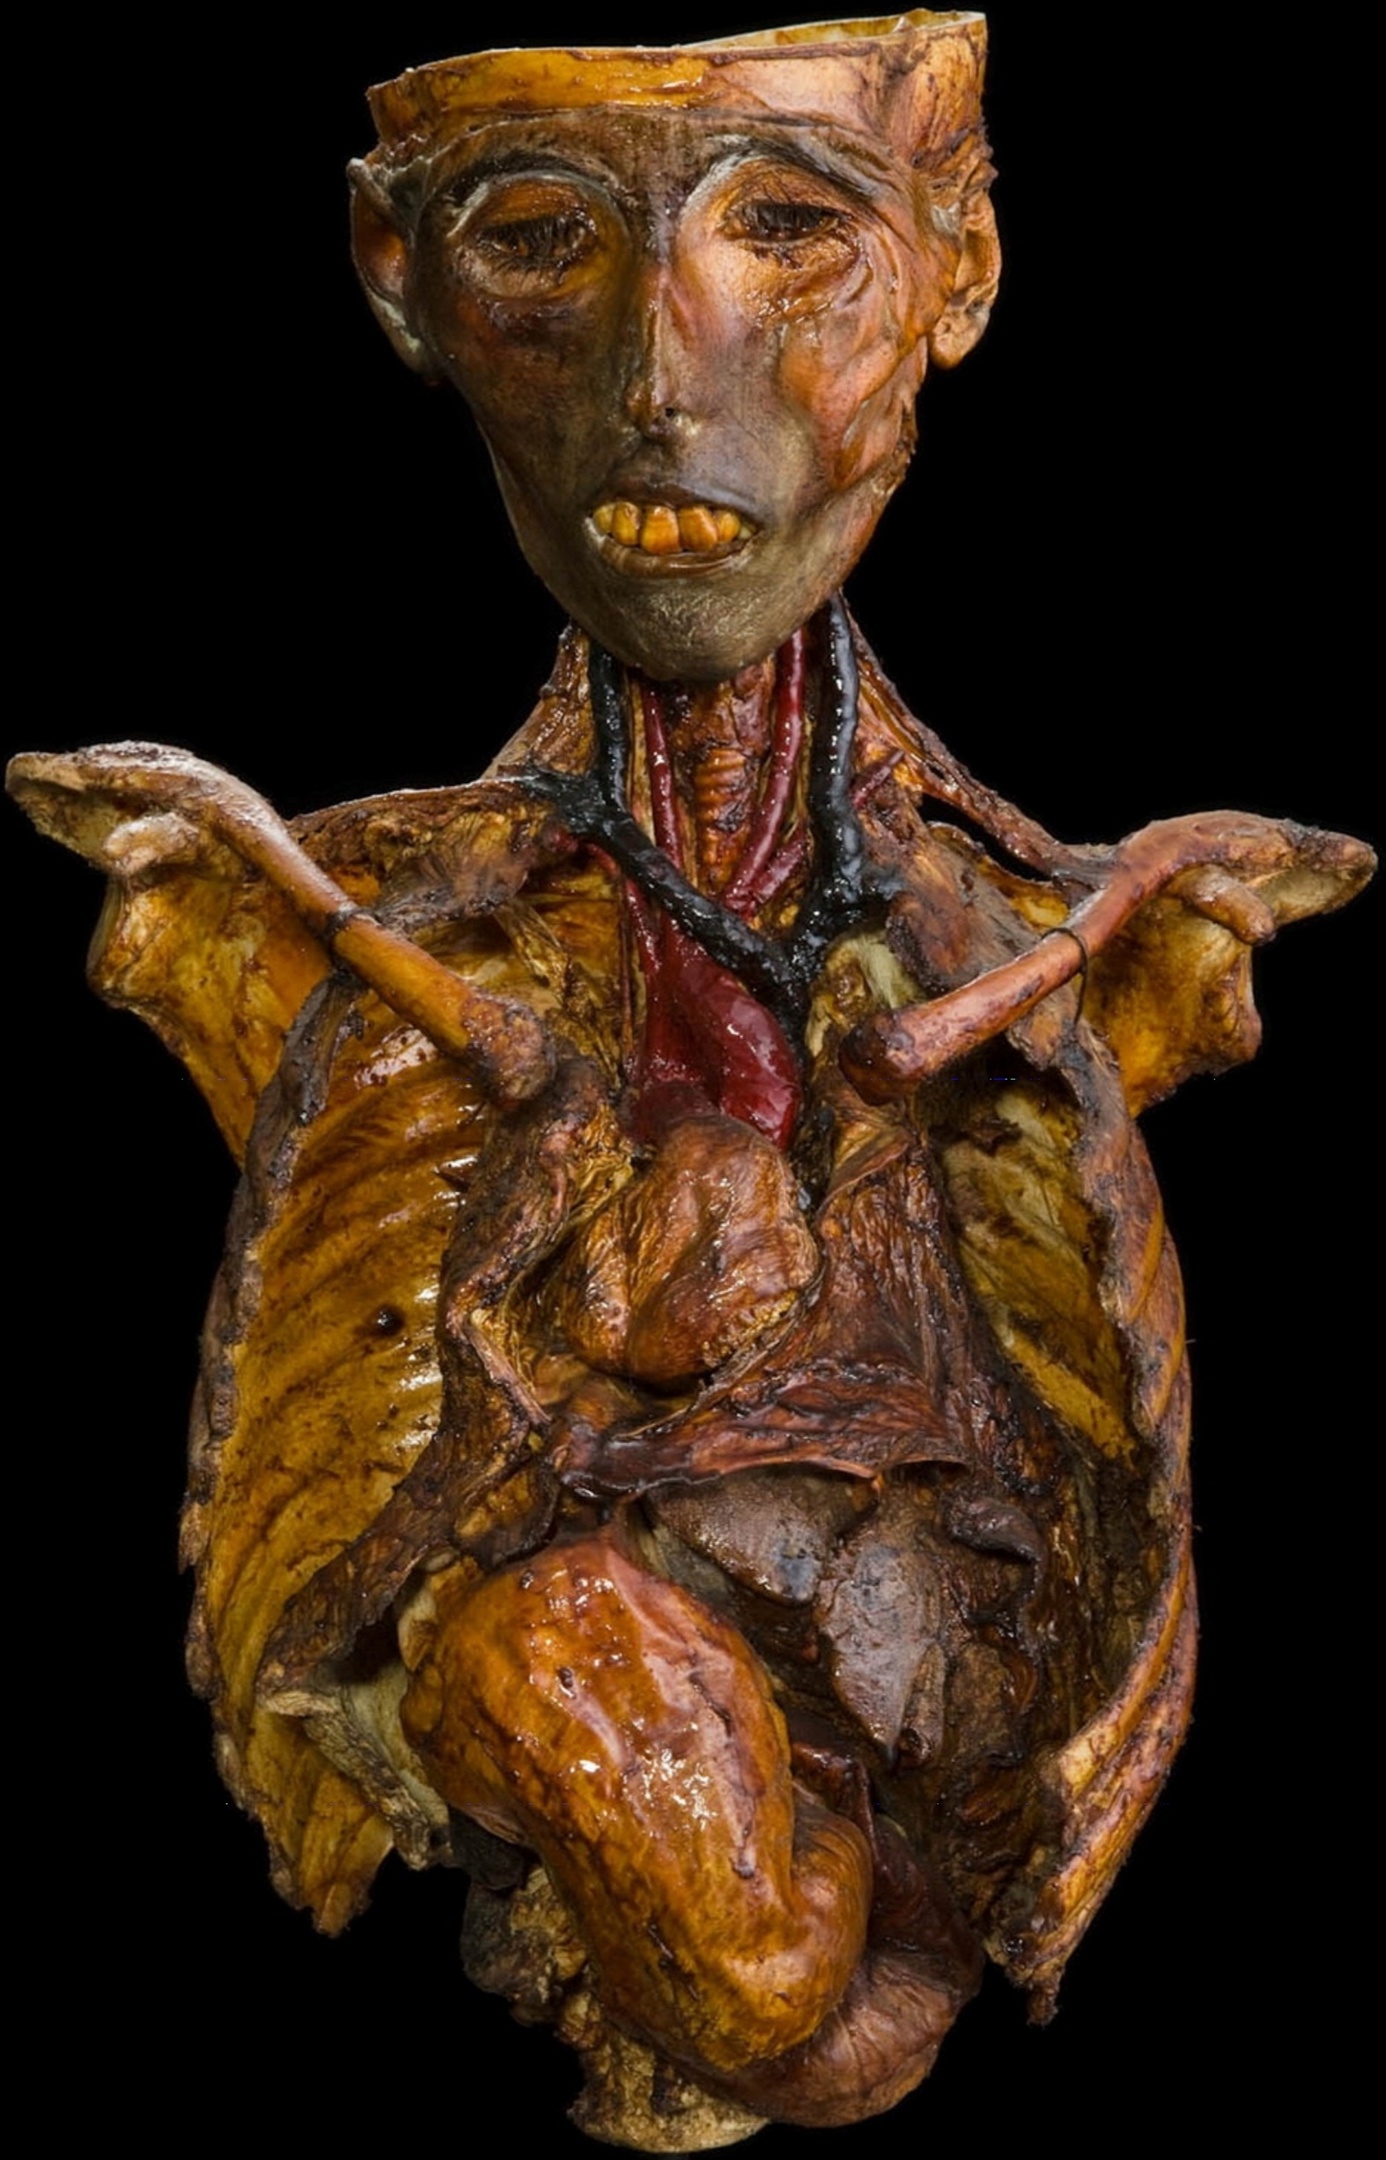 Анатомический препарат мумии с situs inversus totalis и декстрокардией, сохраненной с помощью техники дубления. Хранится в Музее патологической анатомии Падуанского университета.